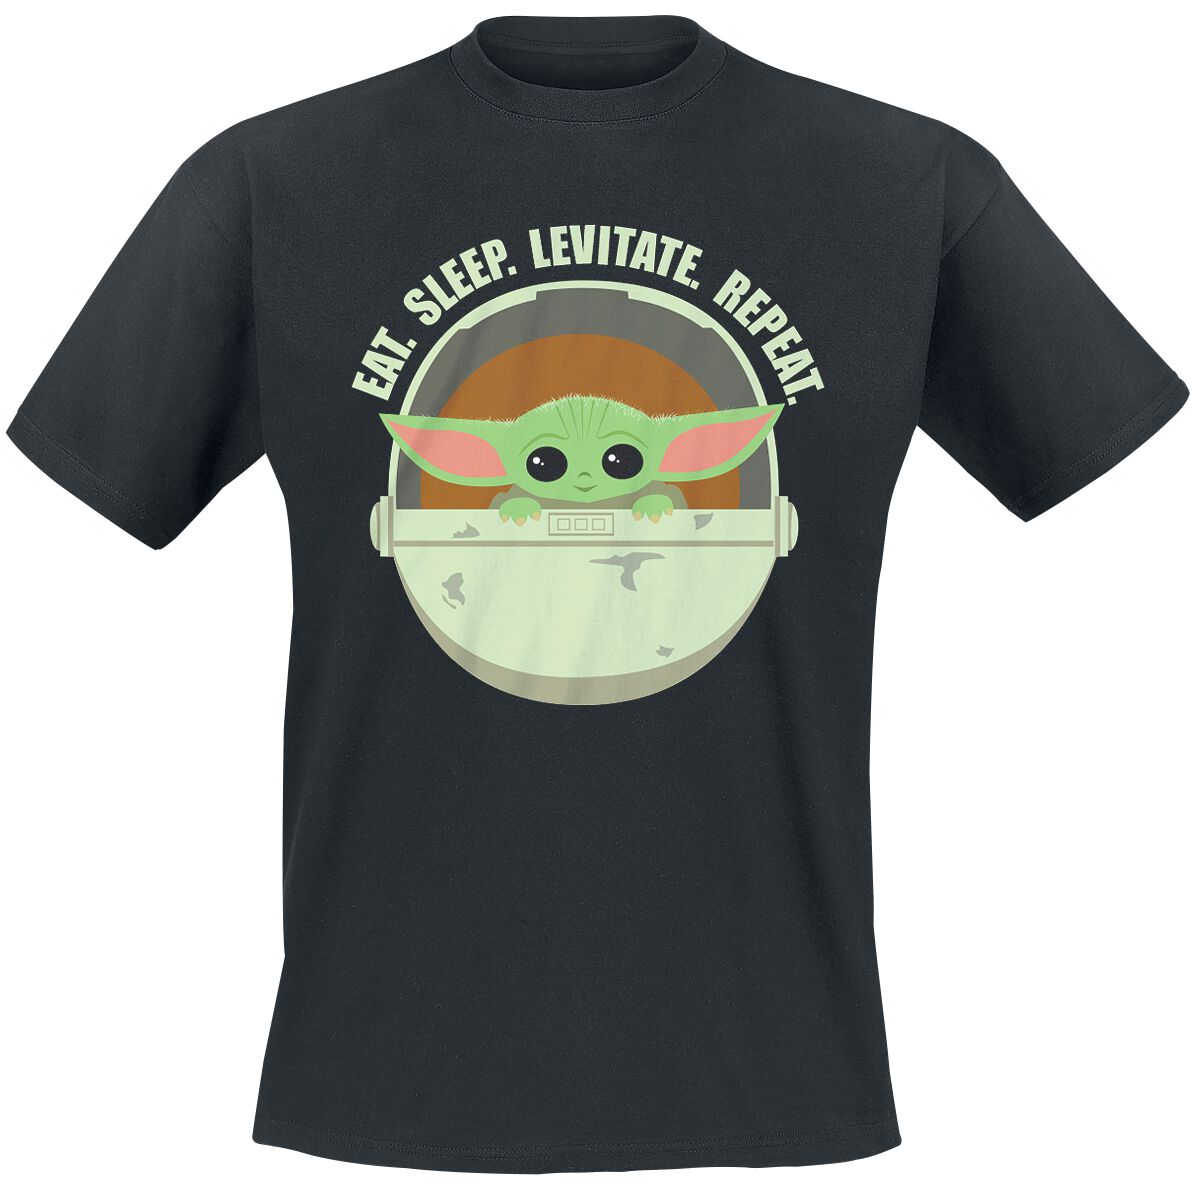 Star Wars T-Shirt - The Mandalorian - Eat. Sleep. Levitate. Repeat. - Grogu - S bis 4XL - für Männer - Größe L - schwarz  - Lizenzierter Fanartikel